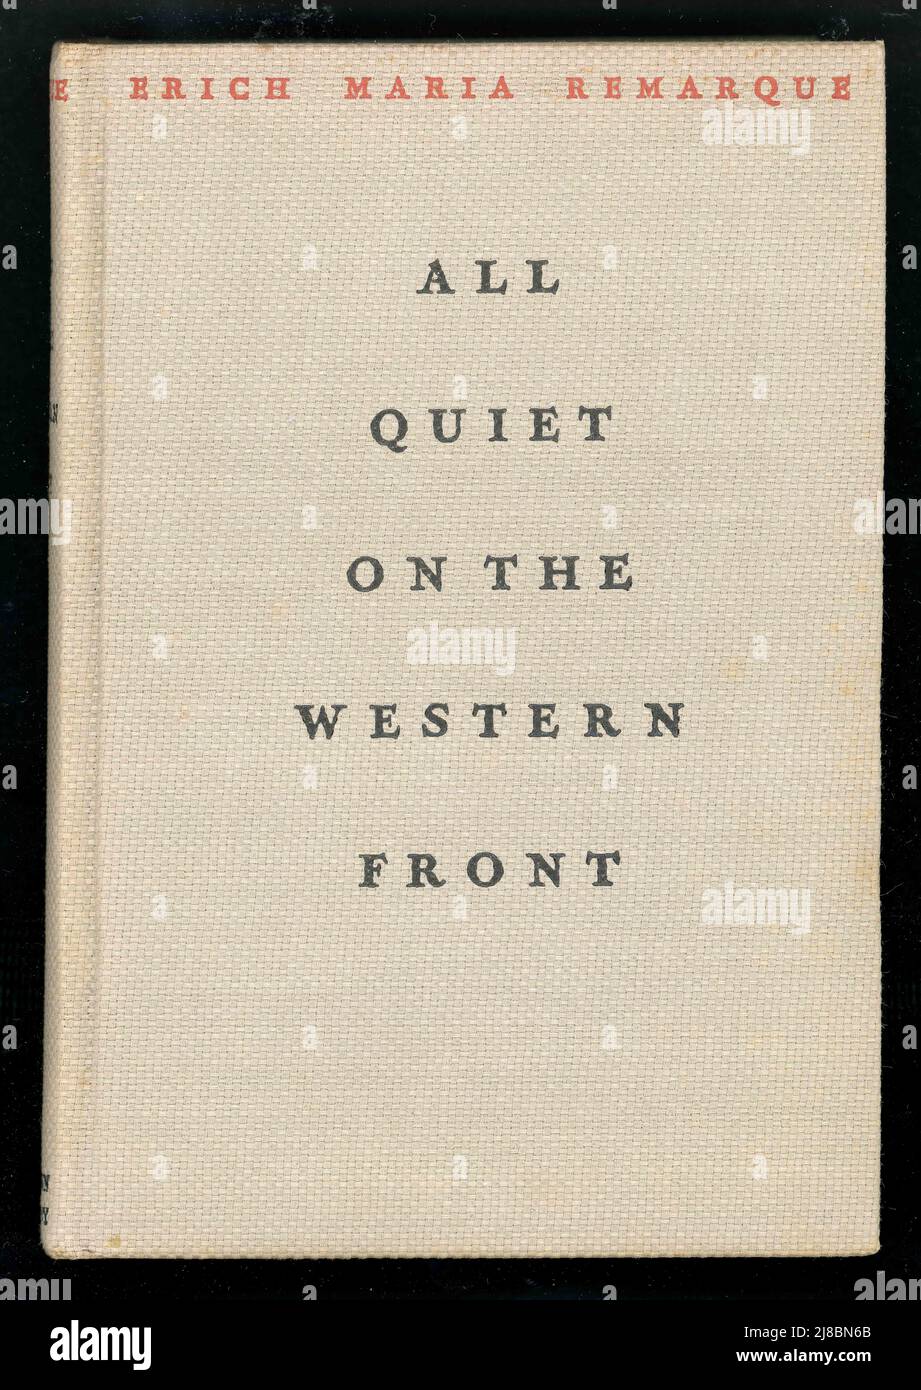 Originalbuch Hardcover von All Quiet on the Western Front von Eric Maria Remarque, mit entfernter Schutzumschlag. Diese amerikanische Ausgabe wurde 1929 veröffentlicht. Stockfoto